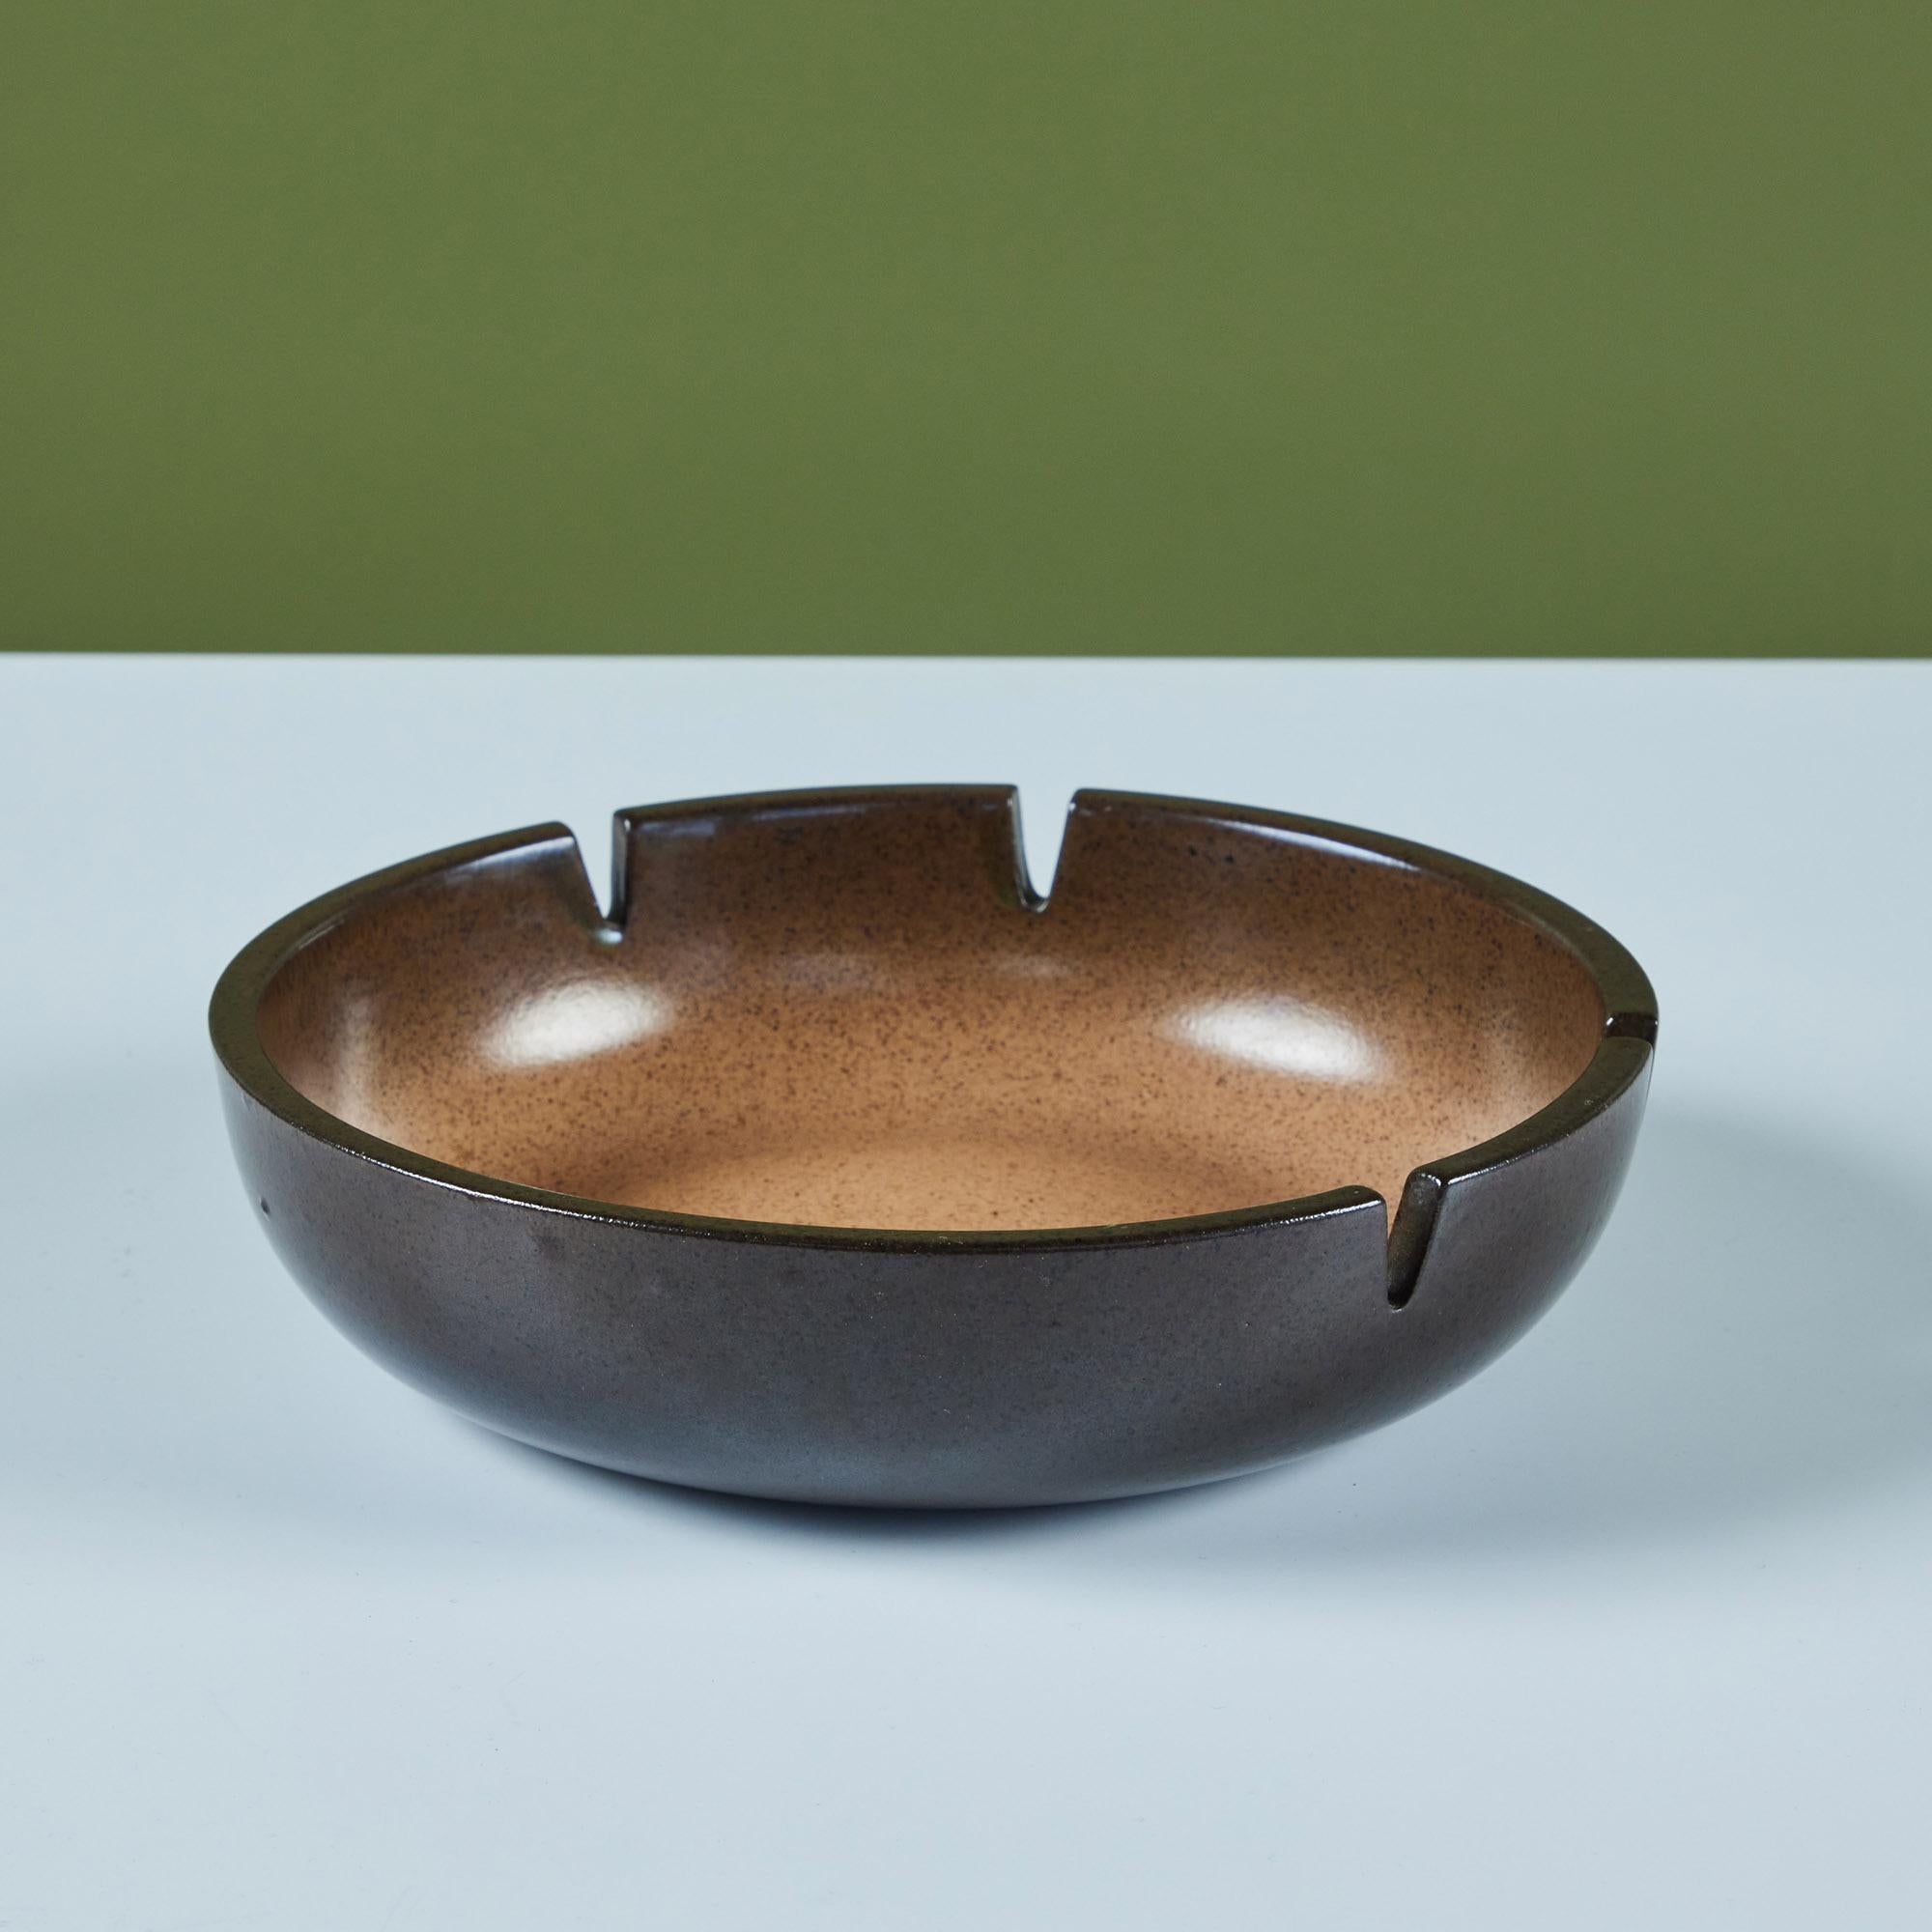 Aschenbecher aus glasierter Keramik von Heath Ceramics, ca. 1960er Jahre, USA. Der Aschenbecher ist außen mit einer dunkelbraunen Sprenkelglasur versehen, die im Inneren in eine hellbraune Sprenkelglasur übergeht. Es gibt vier Steckplätze für